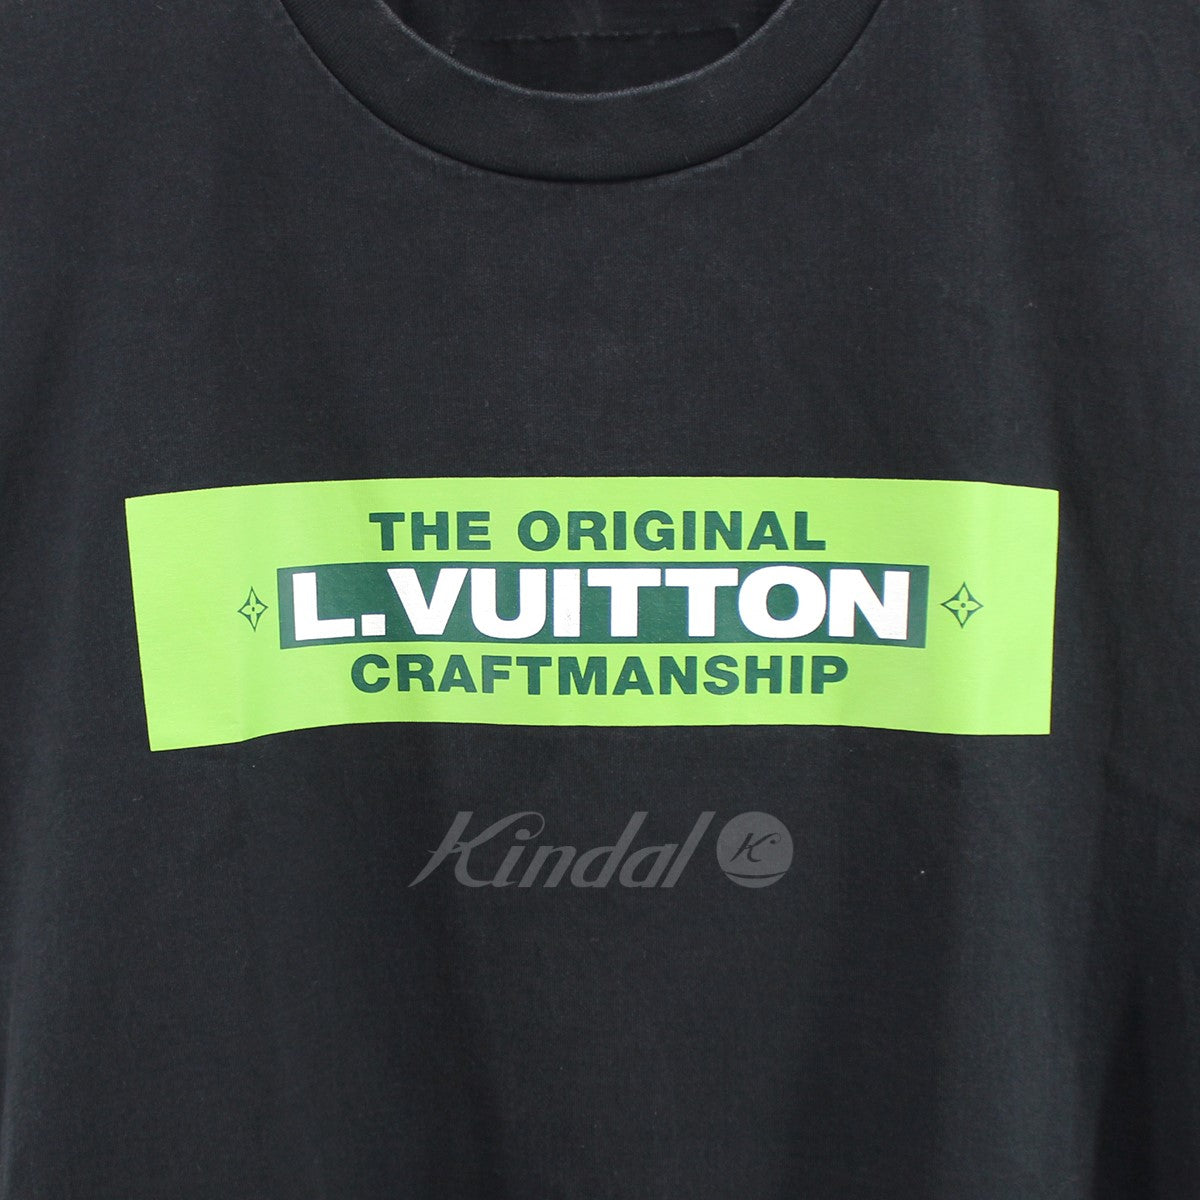 ヴィトン クラフトマン シップ ロゴ プリント Tシャツ私の体系でジャストサイズです